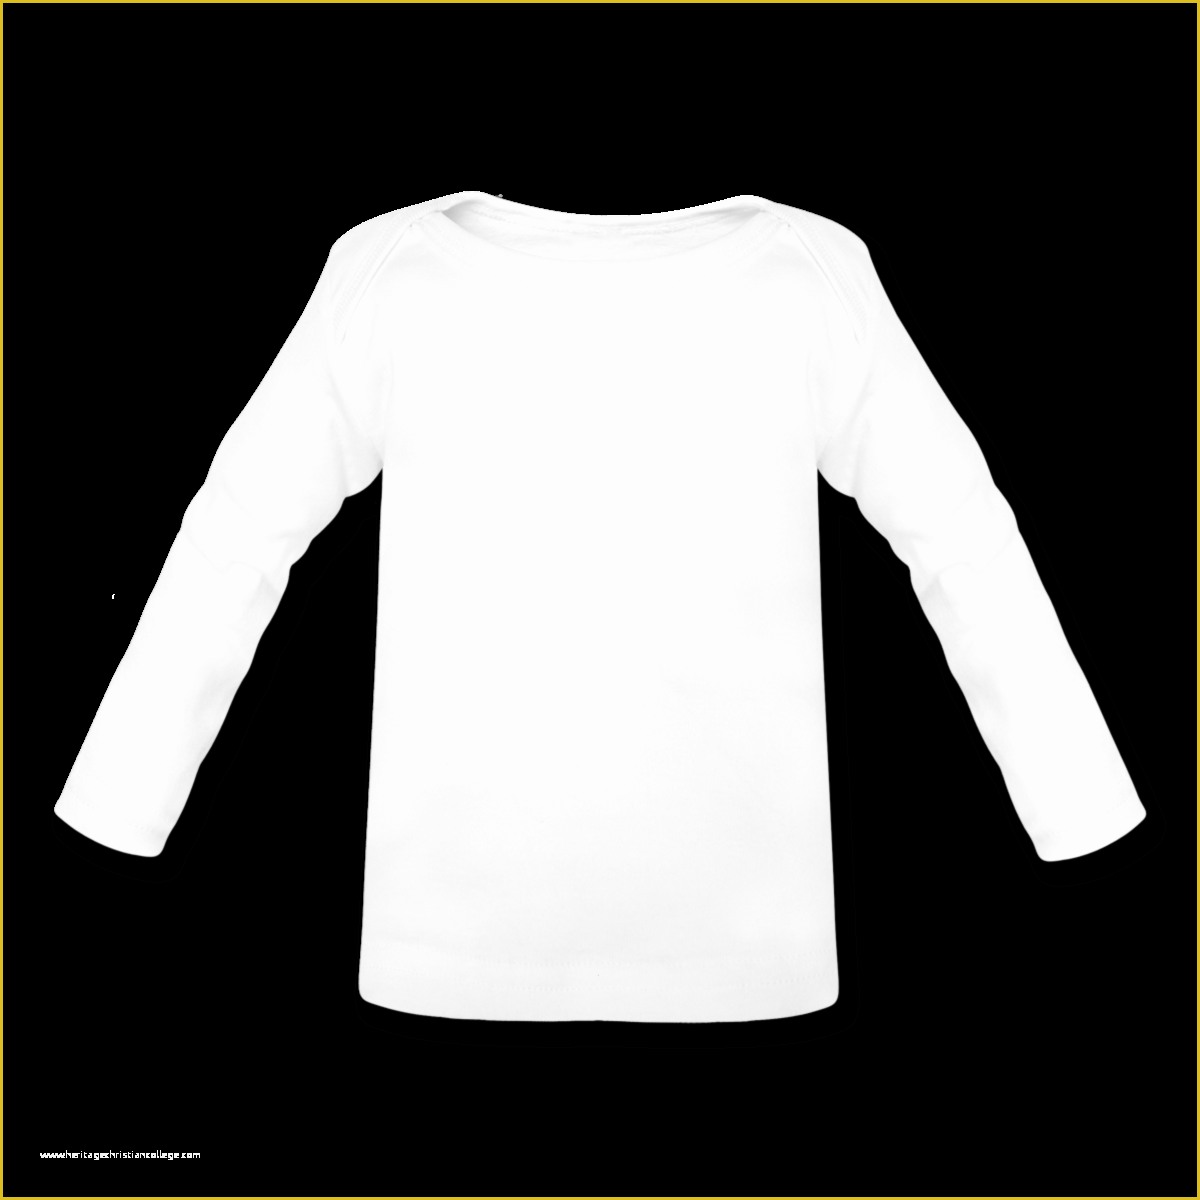 Free Long Sleeve Shirt Template Of Template Long Sleeve T Shirt Clipart Best